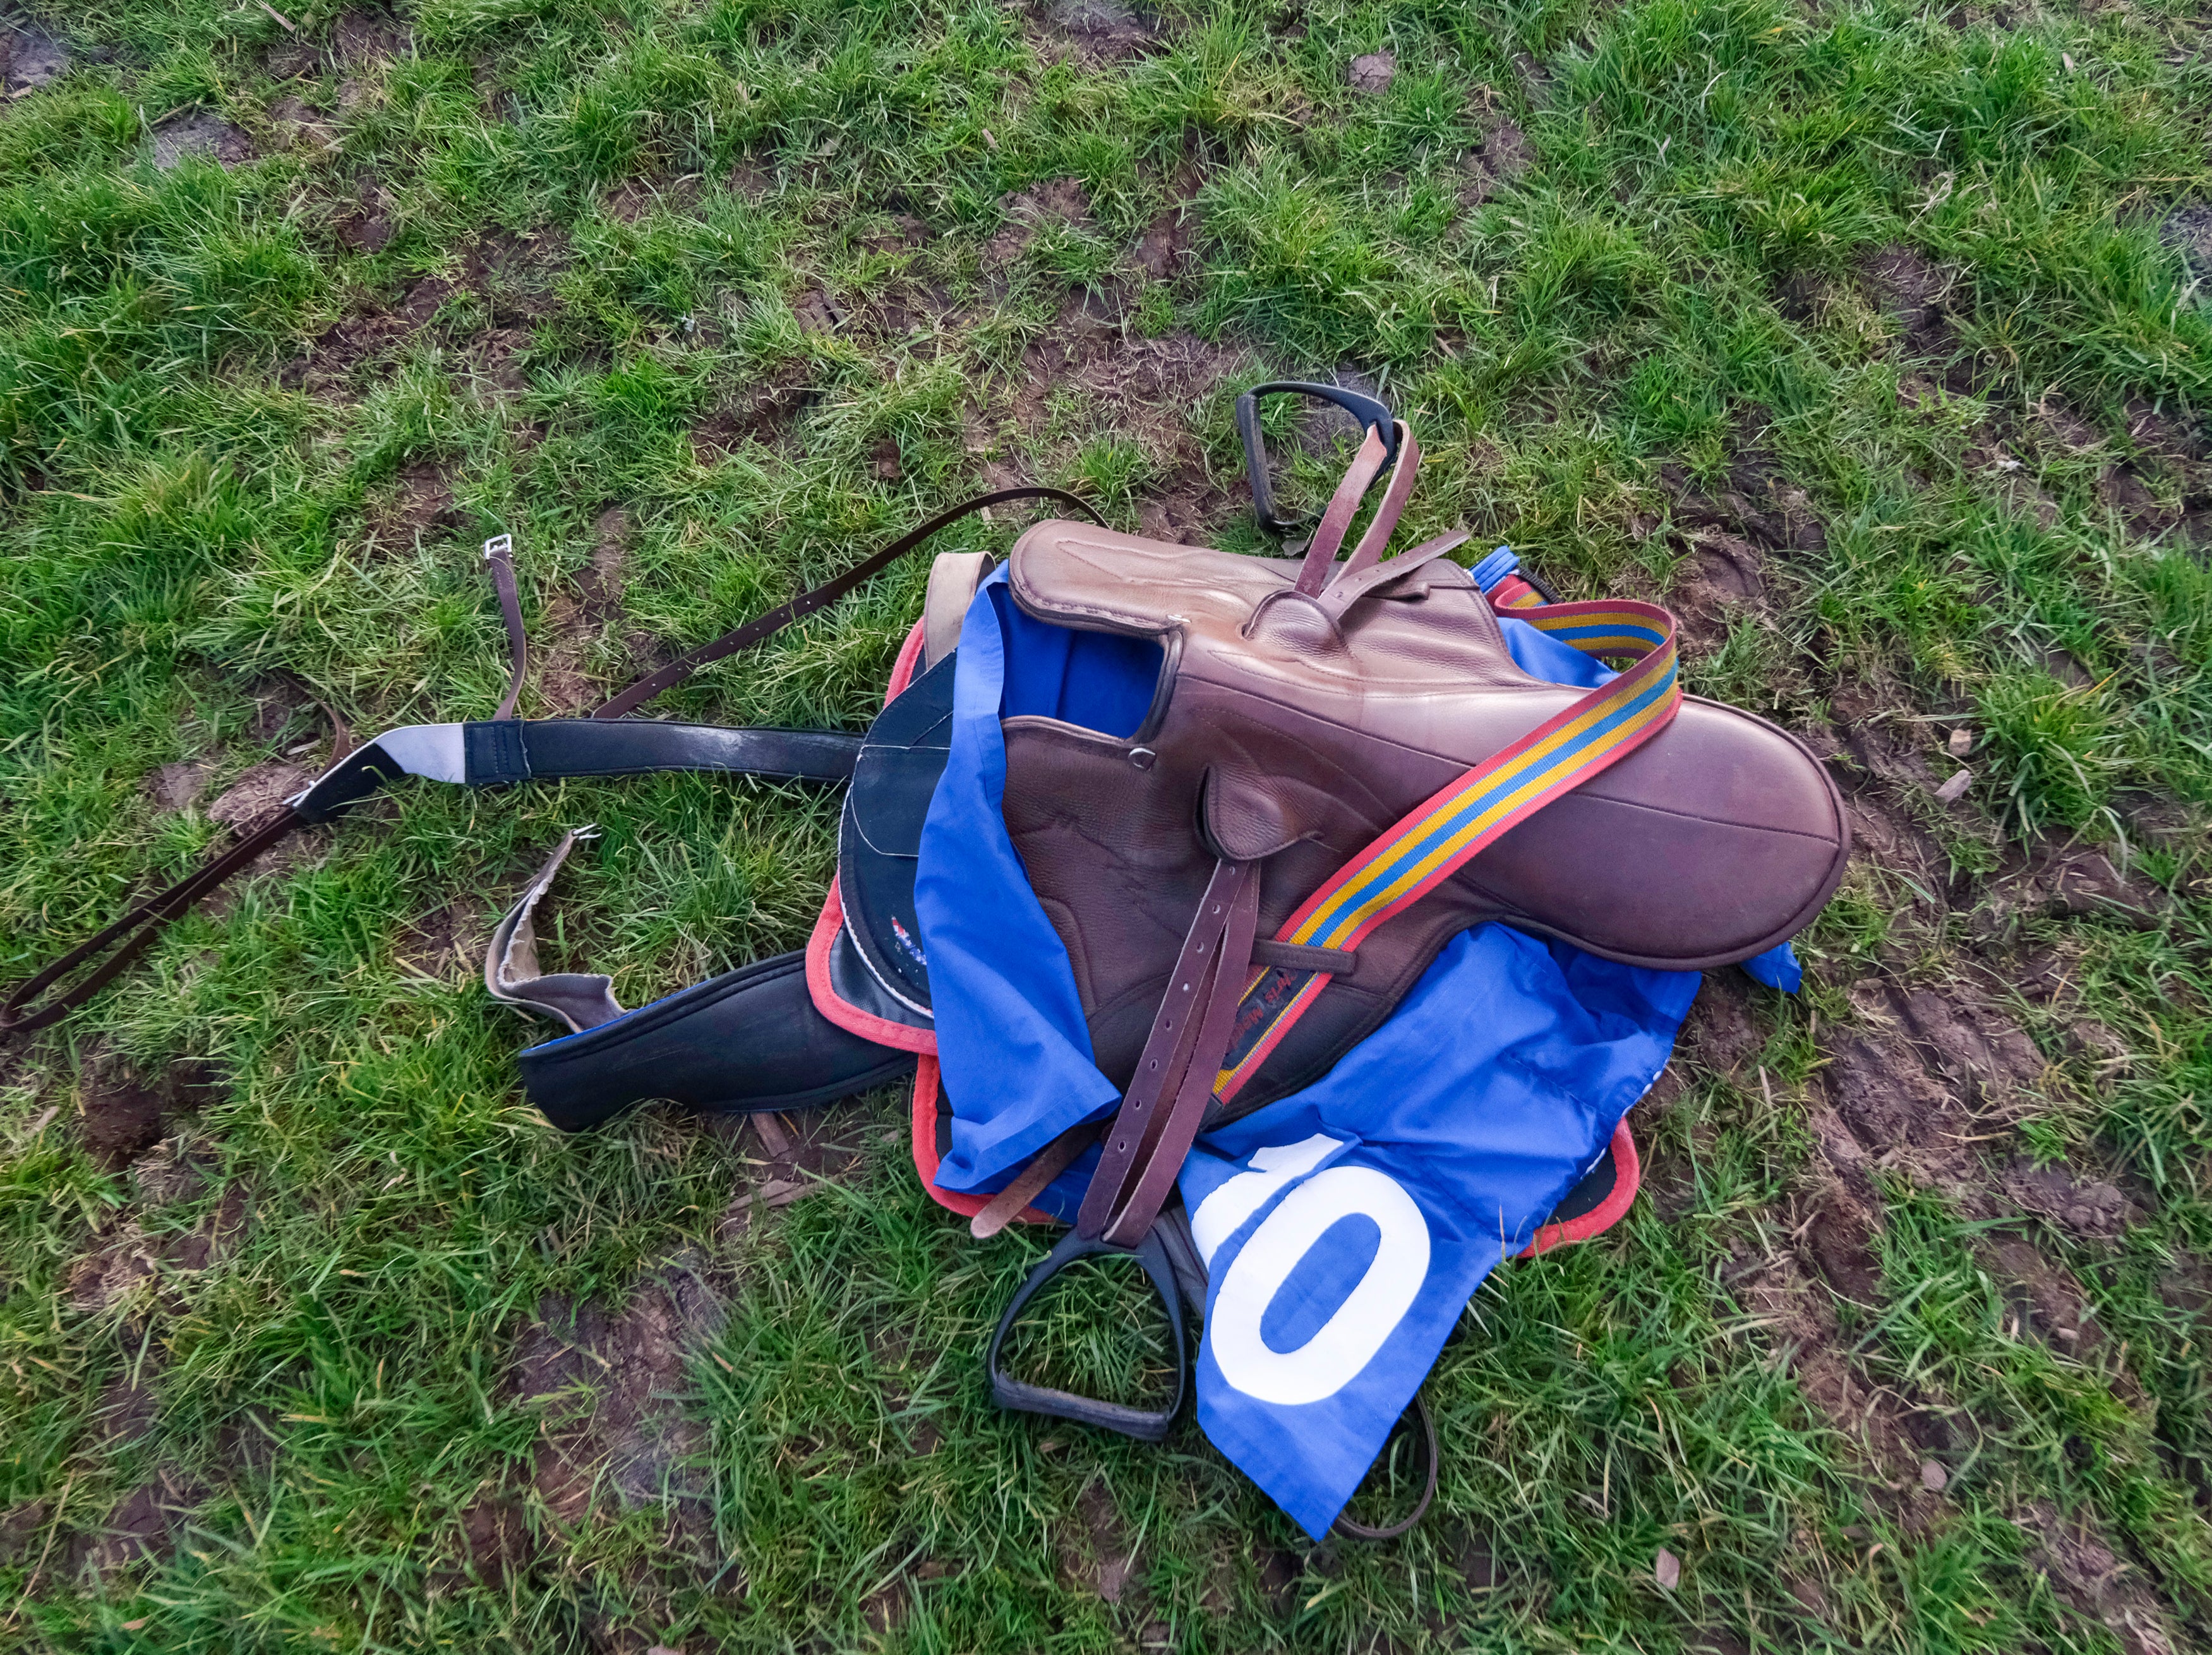 A saddle at Taunton Racecourse